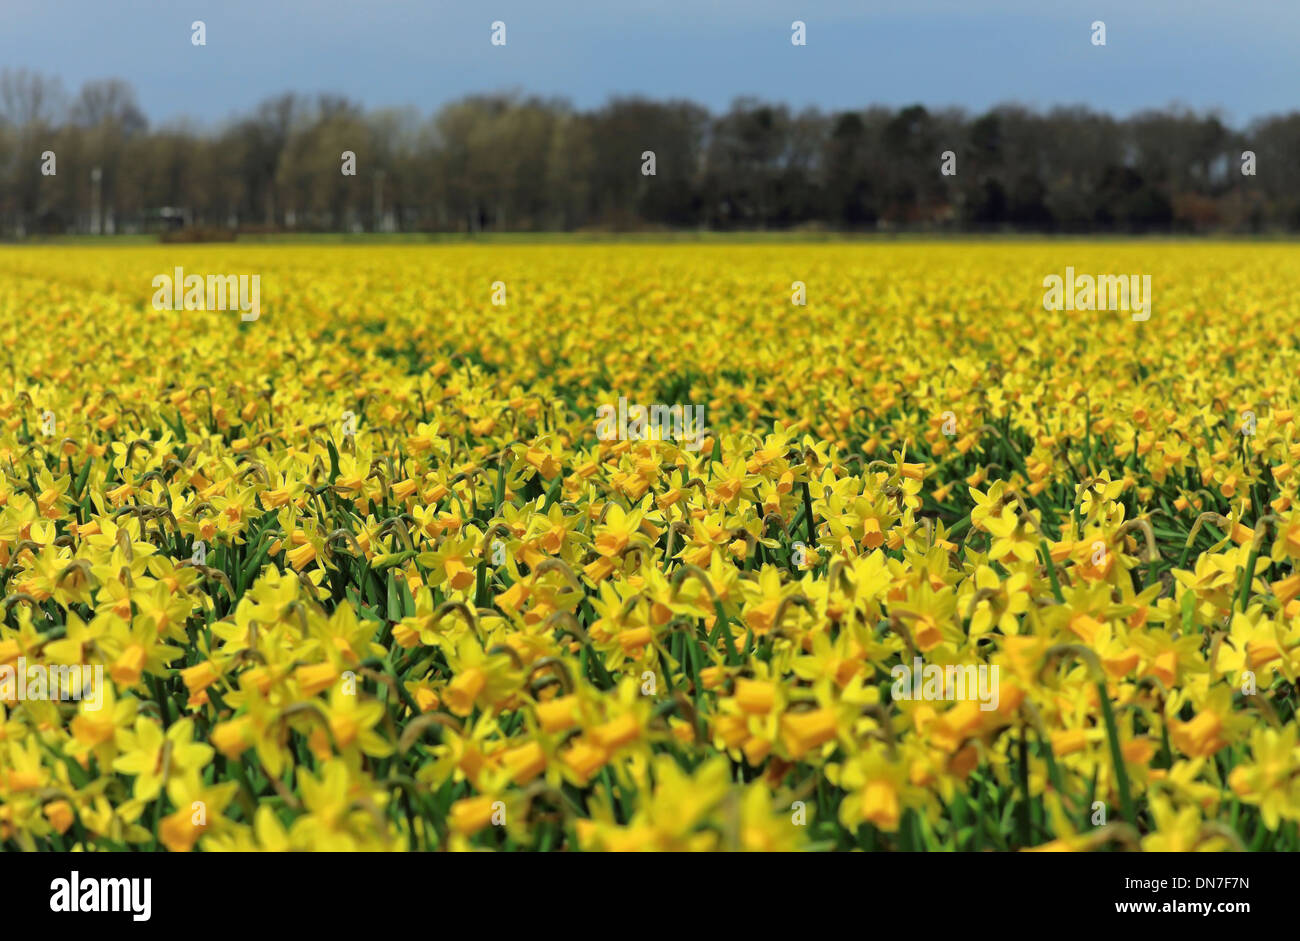 Une mer de jaune : la floraison des jonquilles au printemps, Noordwijk, Pays-Bas du sud, aux Pays-Bas. Banque D'Images